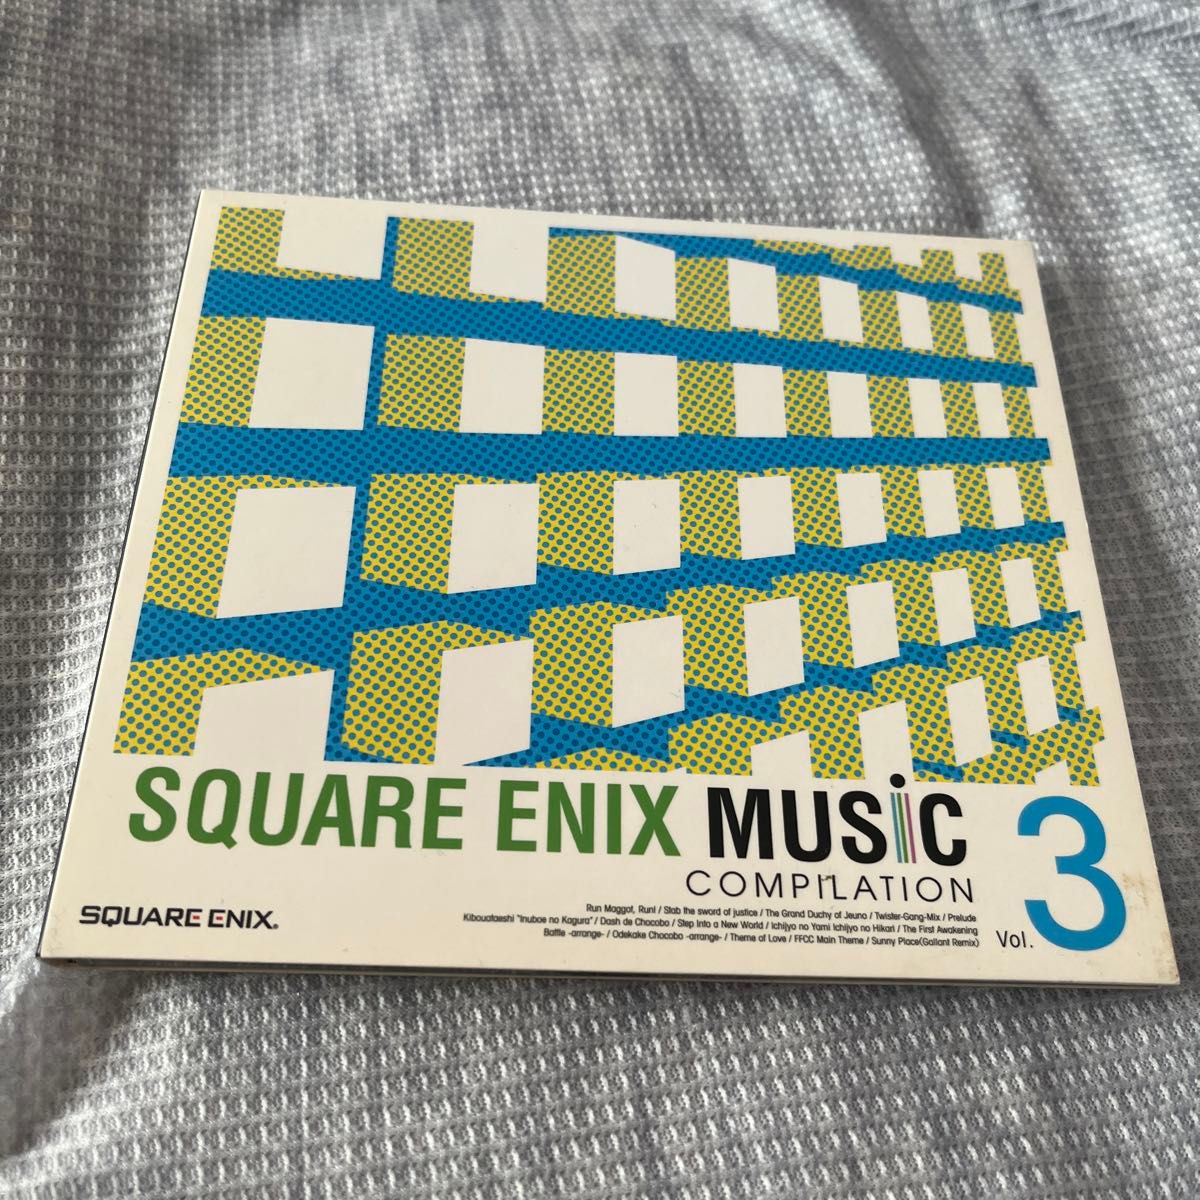 SQUARE ENIX MUSIC 3